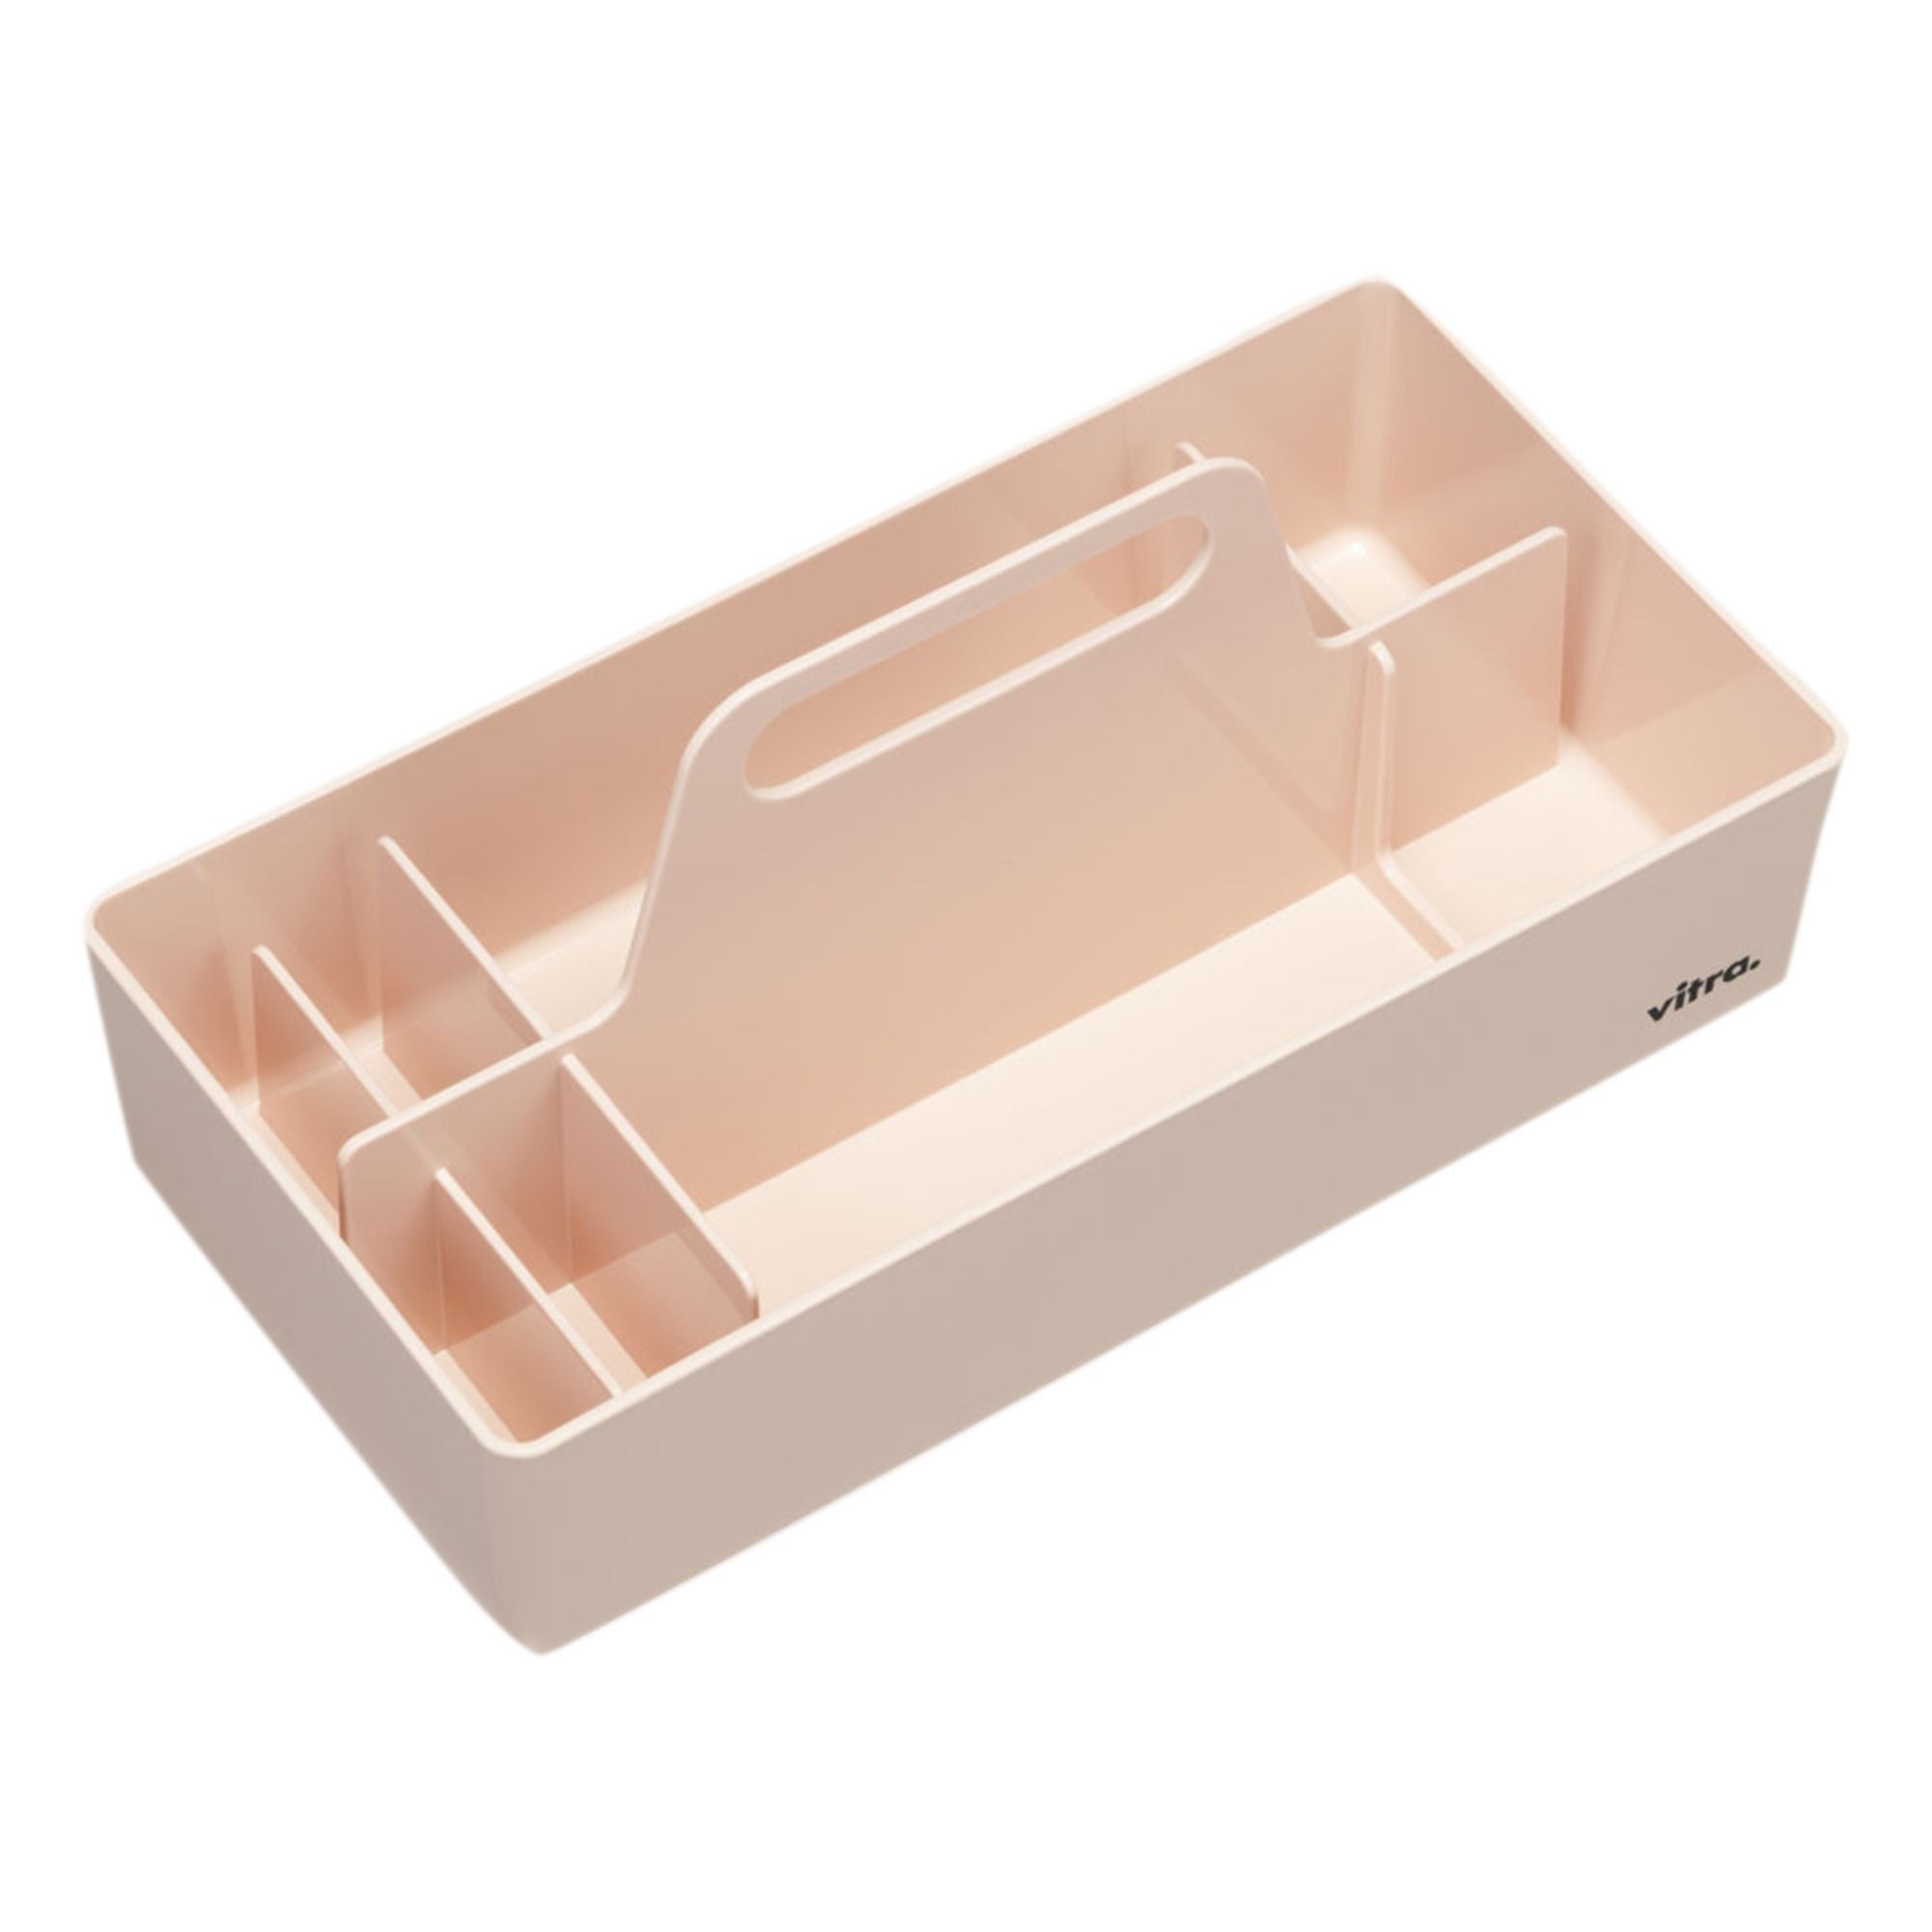 Vitra - Porta-oggetti, modello: Toolbox, in plastica riciclata - Arik Levy  - Rosa chiaro